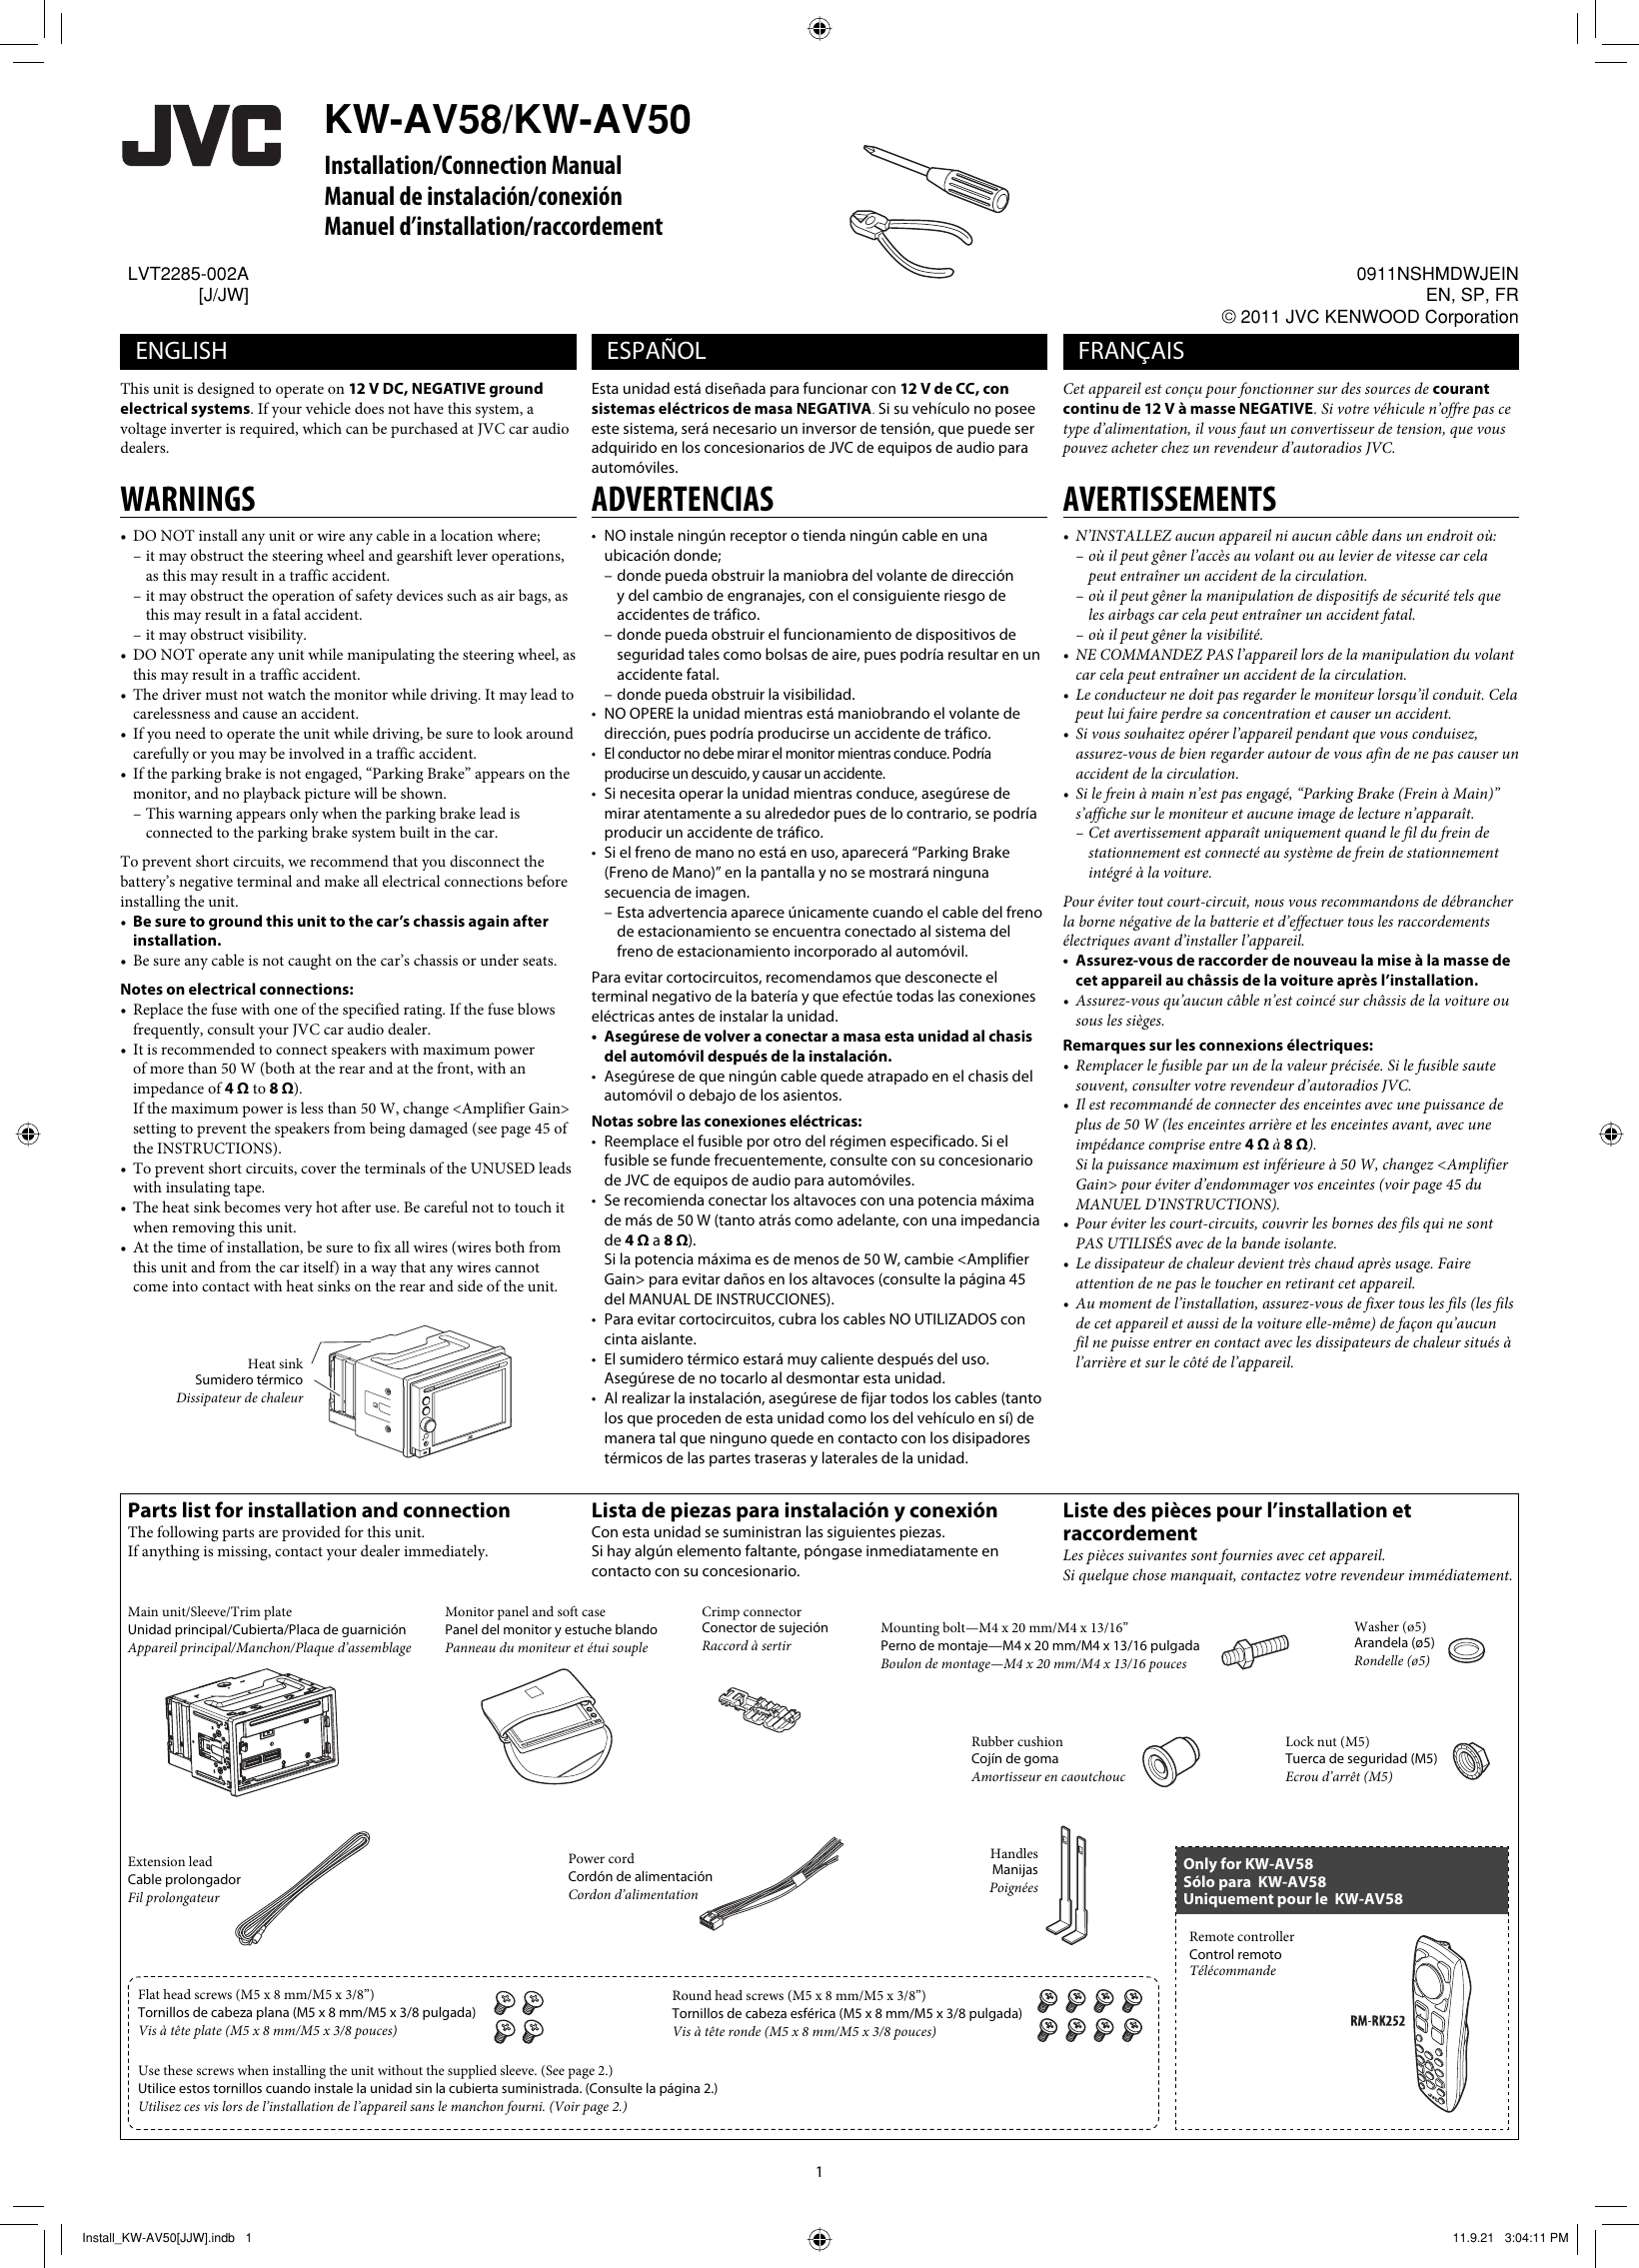 Page 1 of 6 - JVC KW-AV50J KW-AV58/KW-AV50[J/JW] User Manual KW-AV50J, KW-AV58J LVT2285-002A